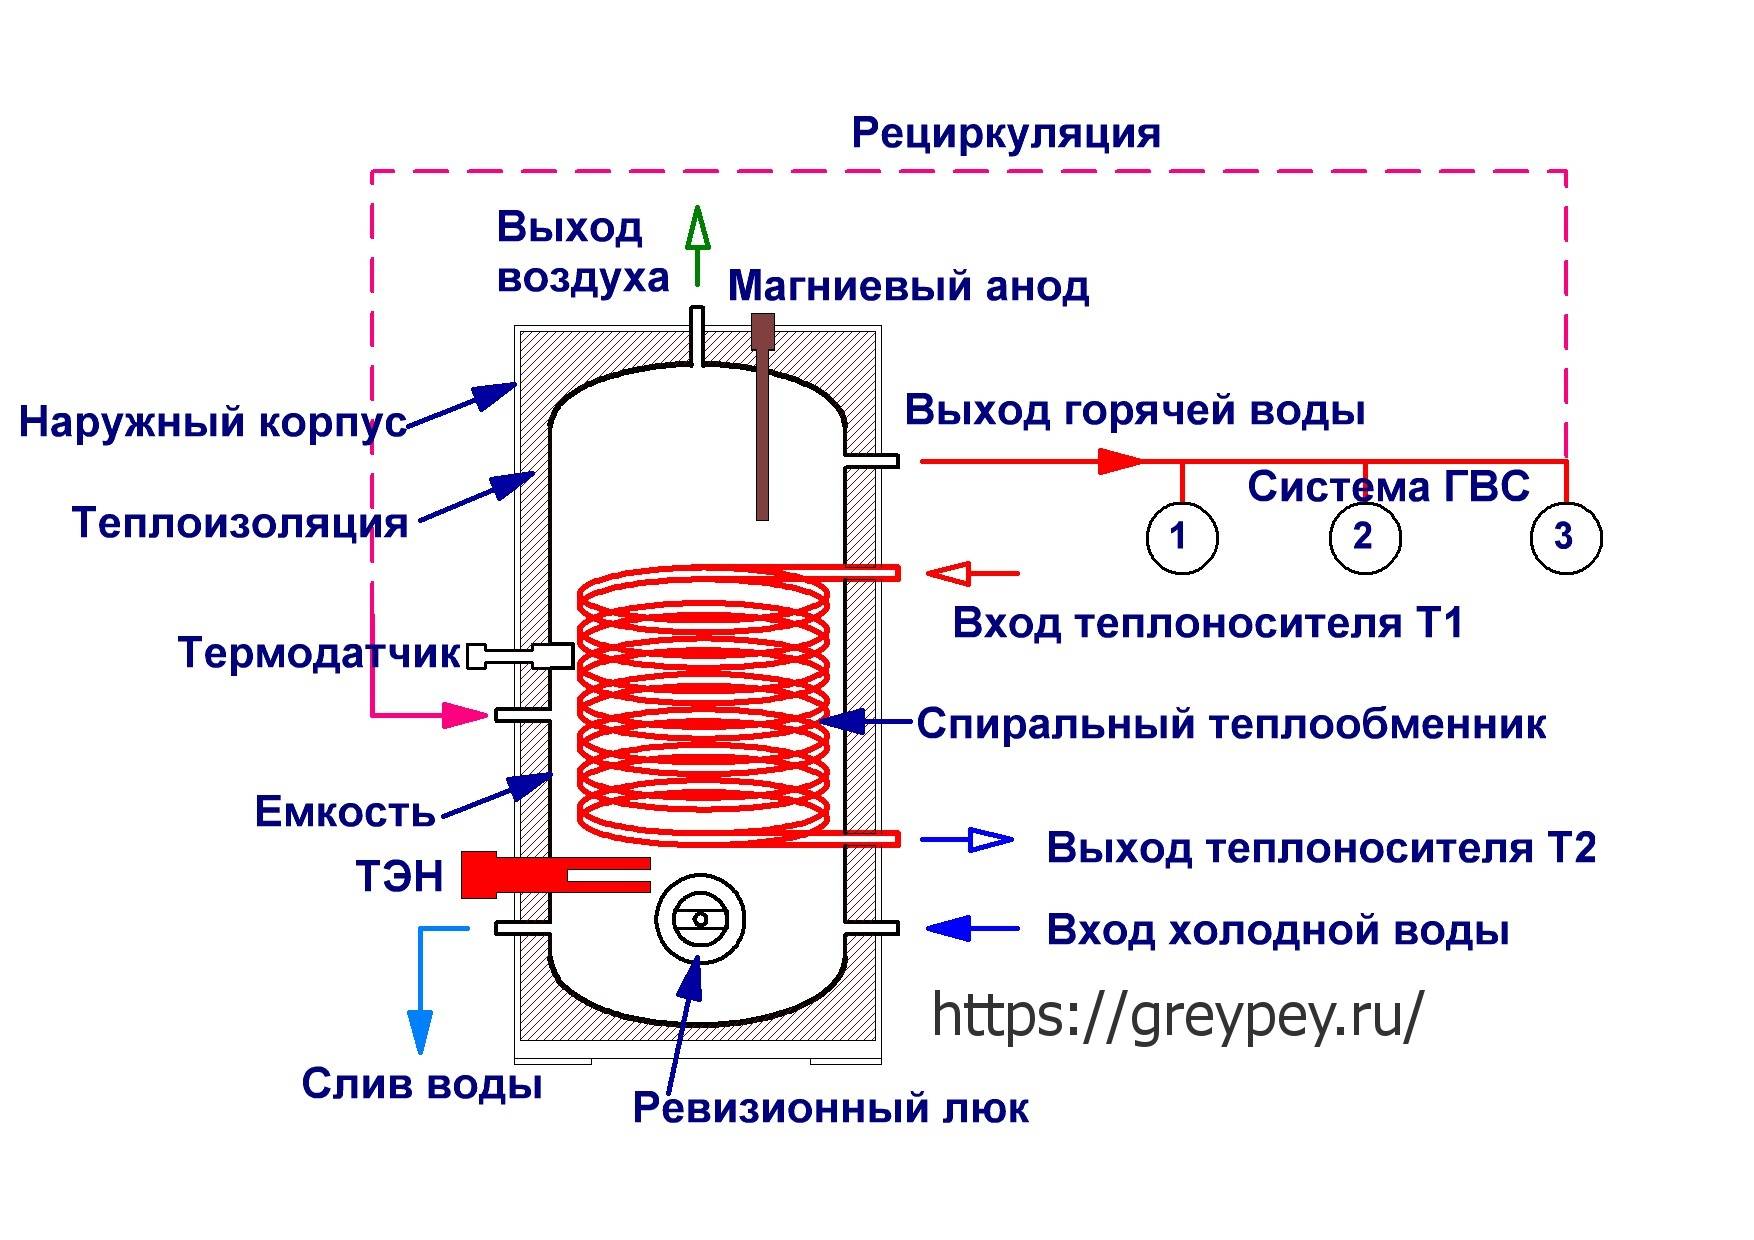 Выбор и установка водонагревателя под раковину